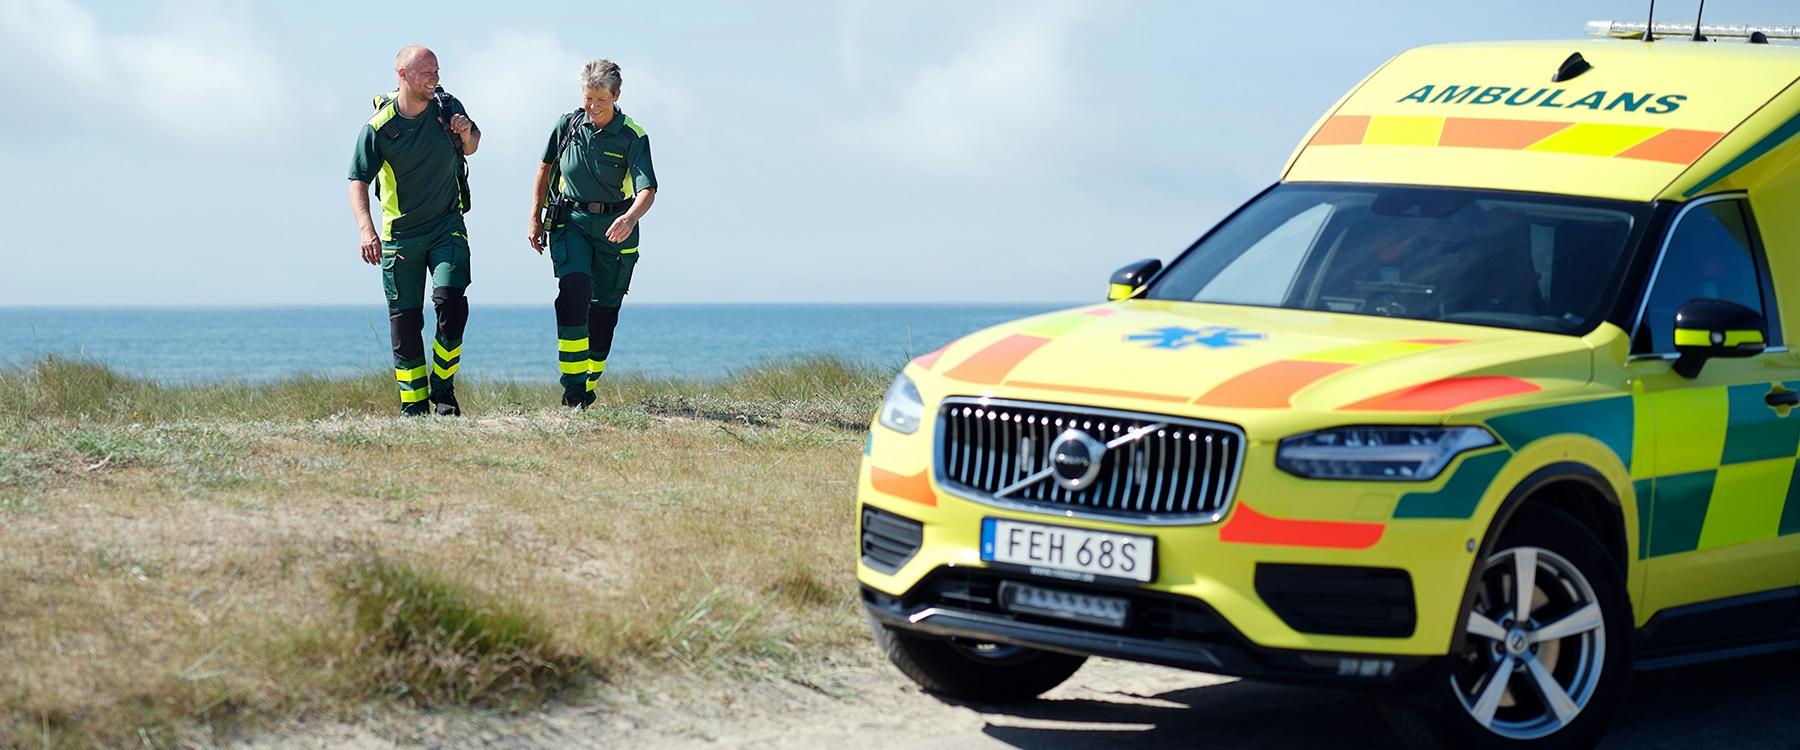 Ambulance staff by ambulance on the seaside